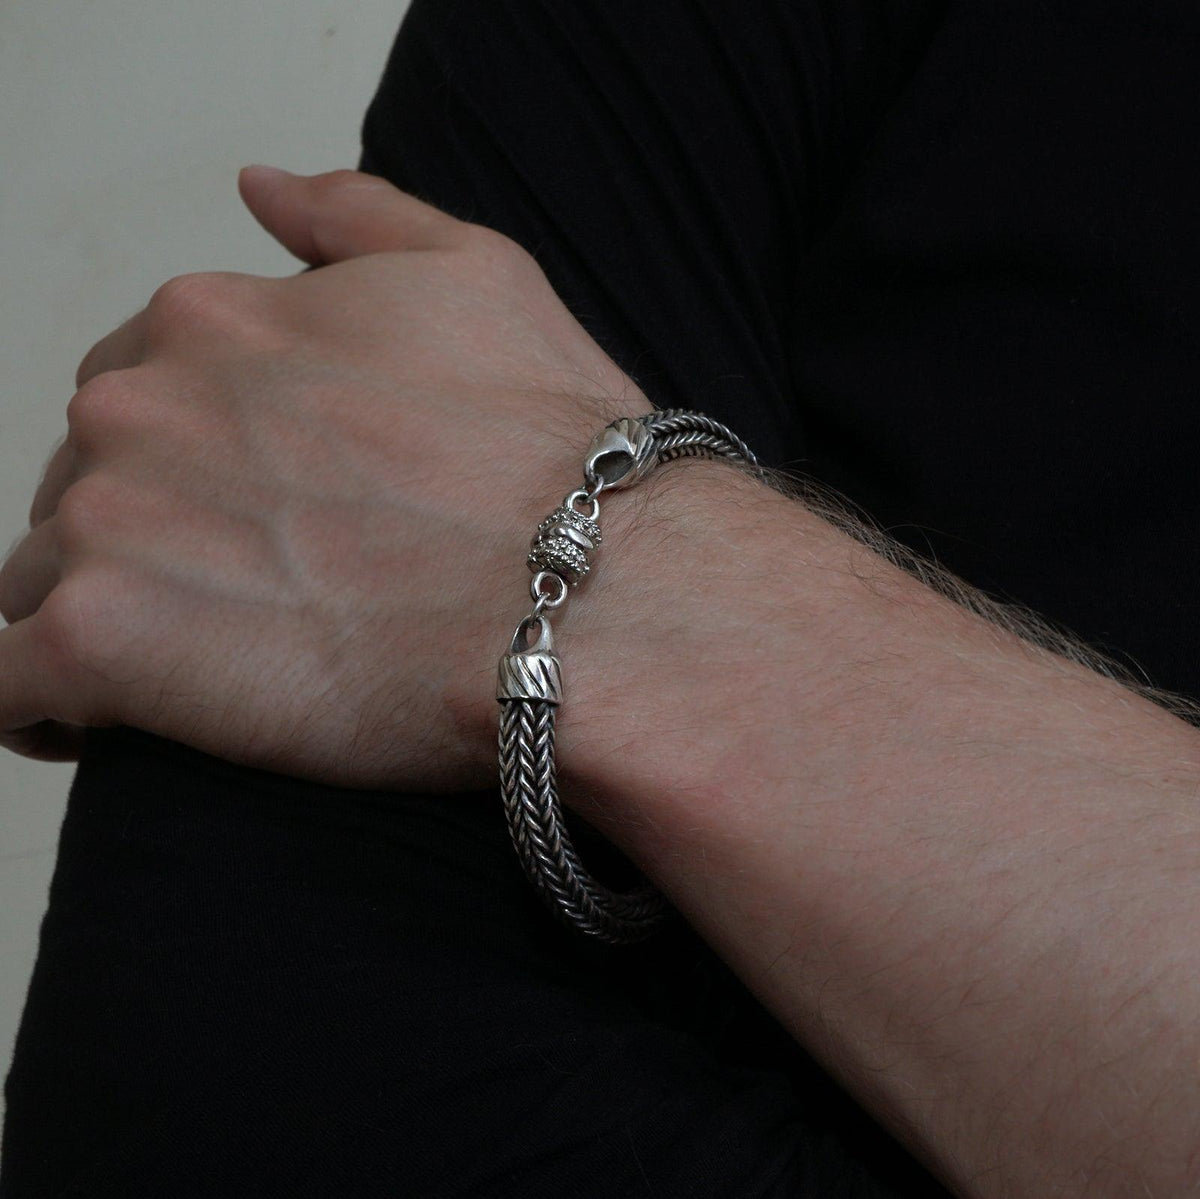 Woven Chain Bracelet in Silver, 8mm - Tippy Taste Jewelry